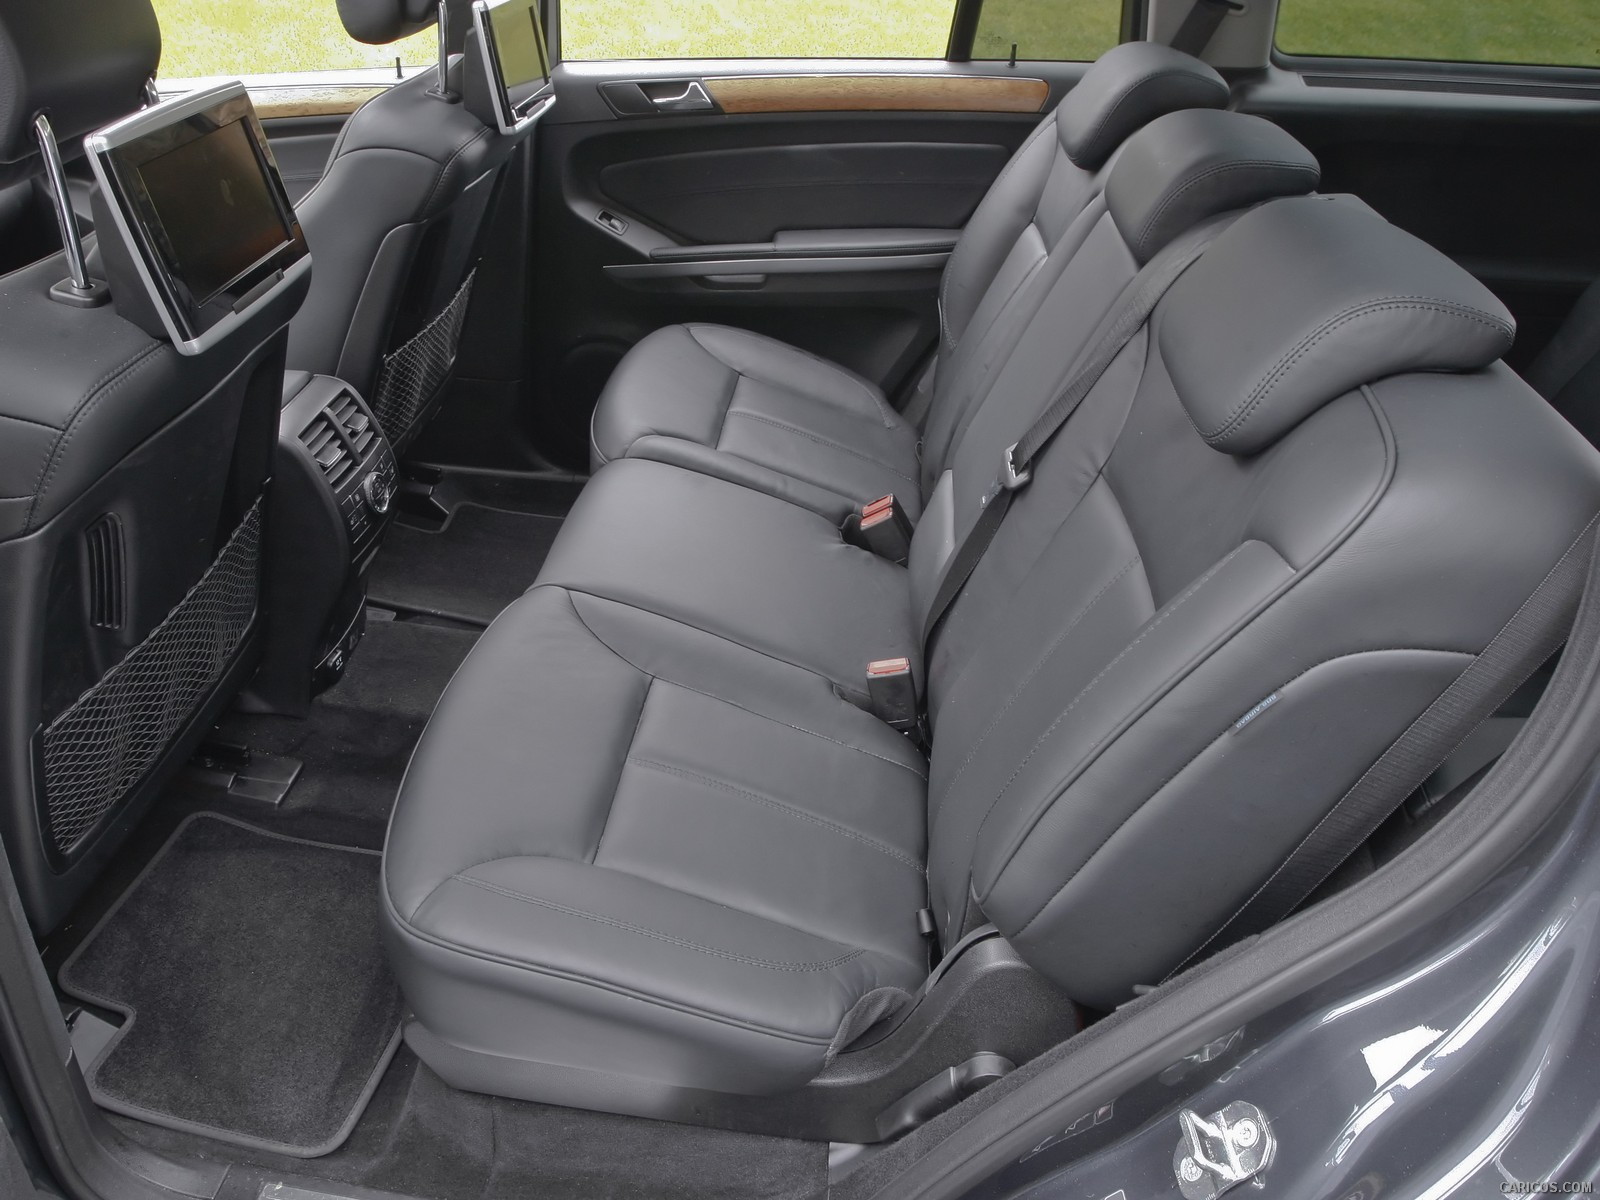 2010 Mercedes-Benz GL550 - Interior Rear Seats, #67 of 112